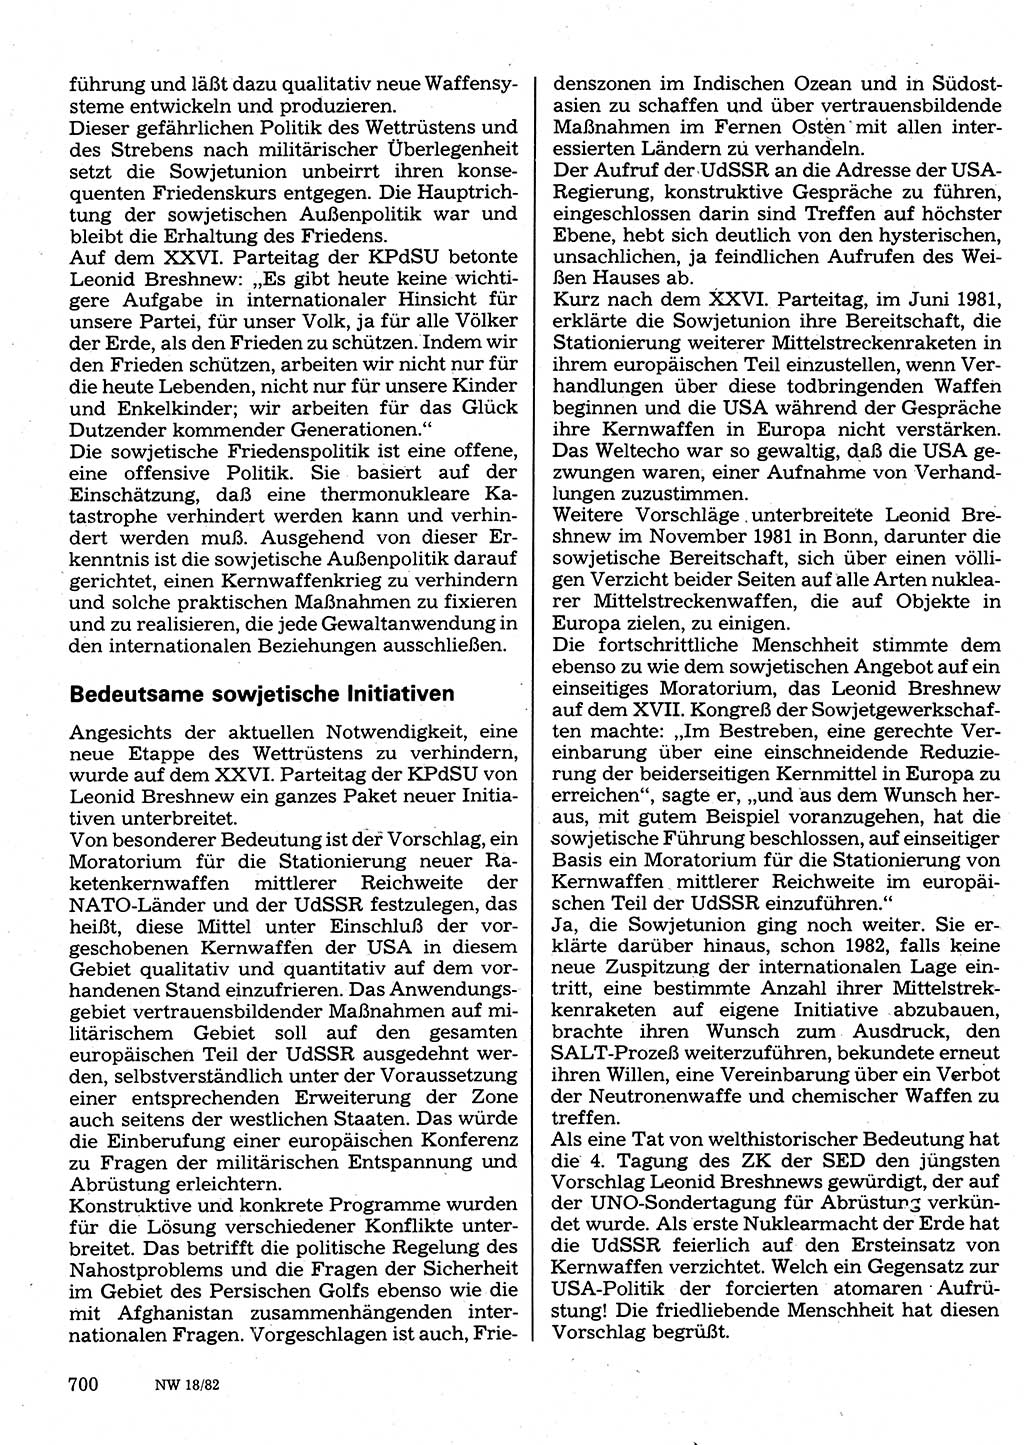 Neuer Weg (NW), Organ des Zentralkomitees (ZK) der SED (Sozialistische Einheitspartei Deutschlands) für Fragen des Parteilebens, 37. Jahrgang [Deutsche Demokratische Republik (DDR)] 1982, Seite 700 (NW ZK SED DDR 1982, S. 700)